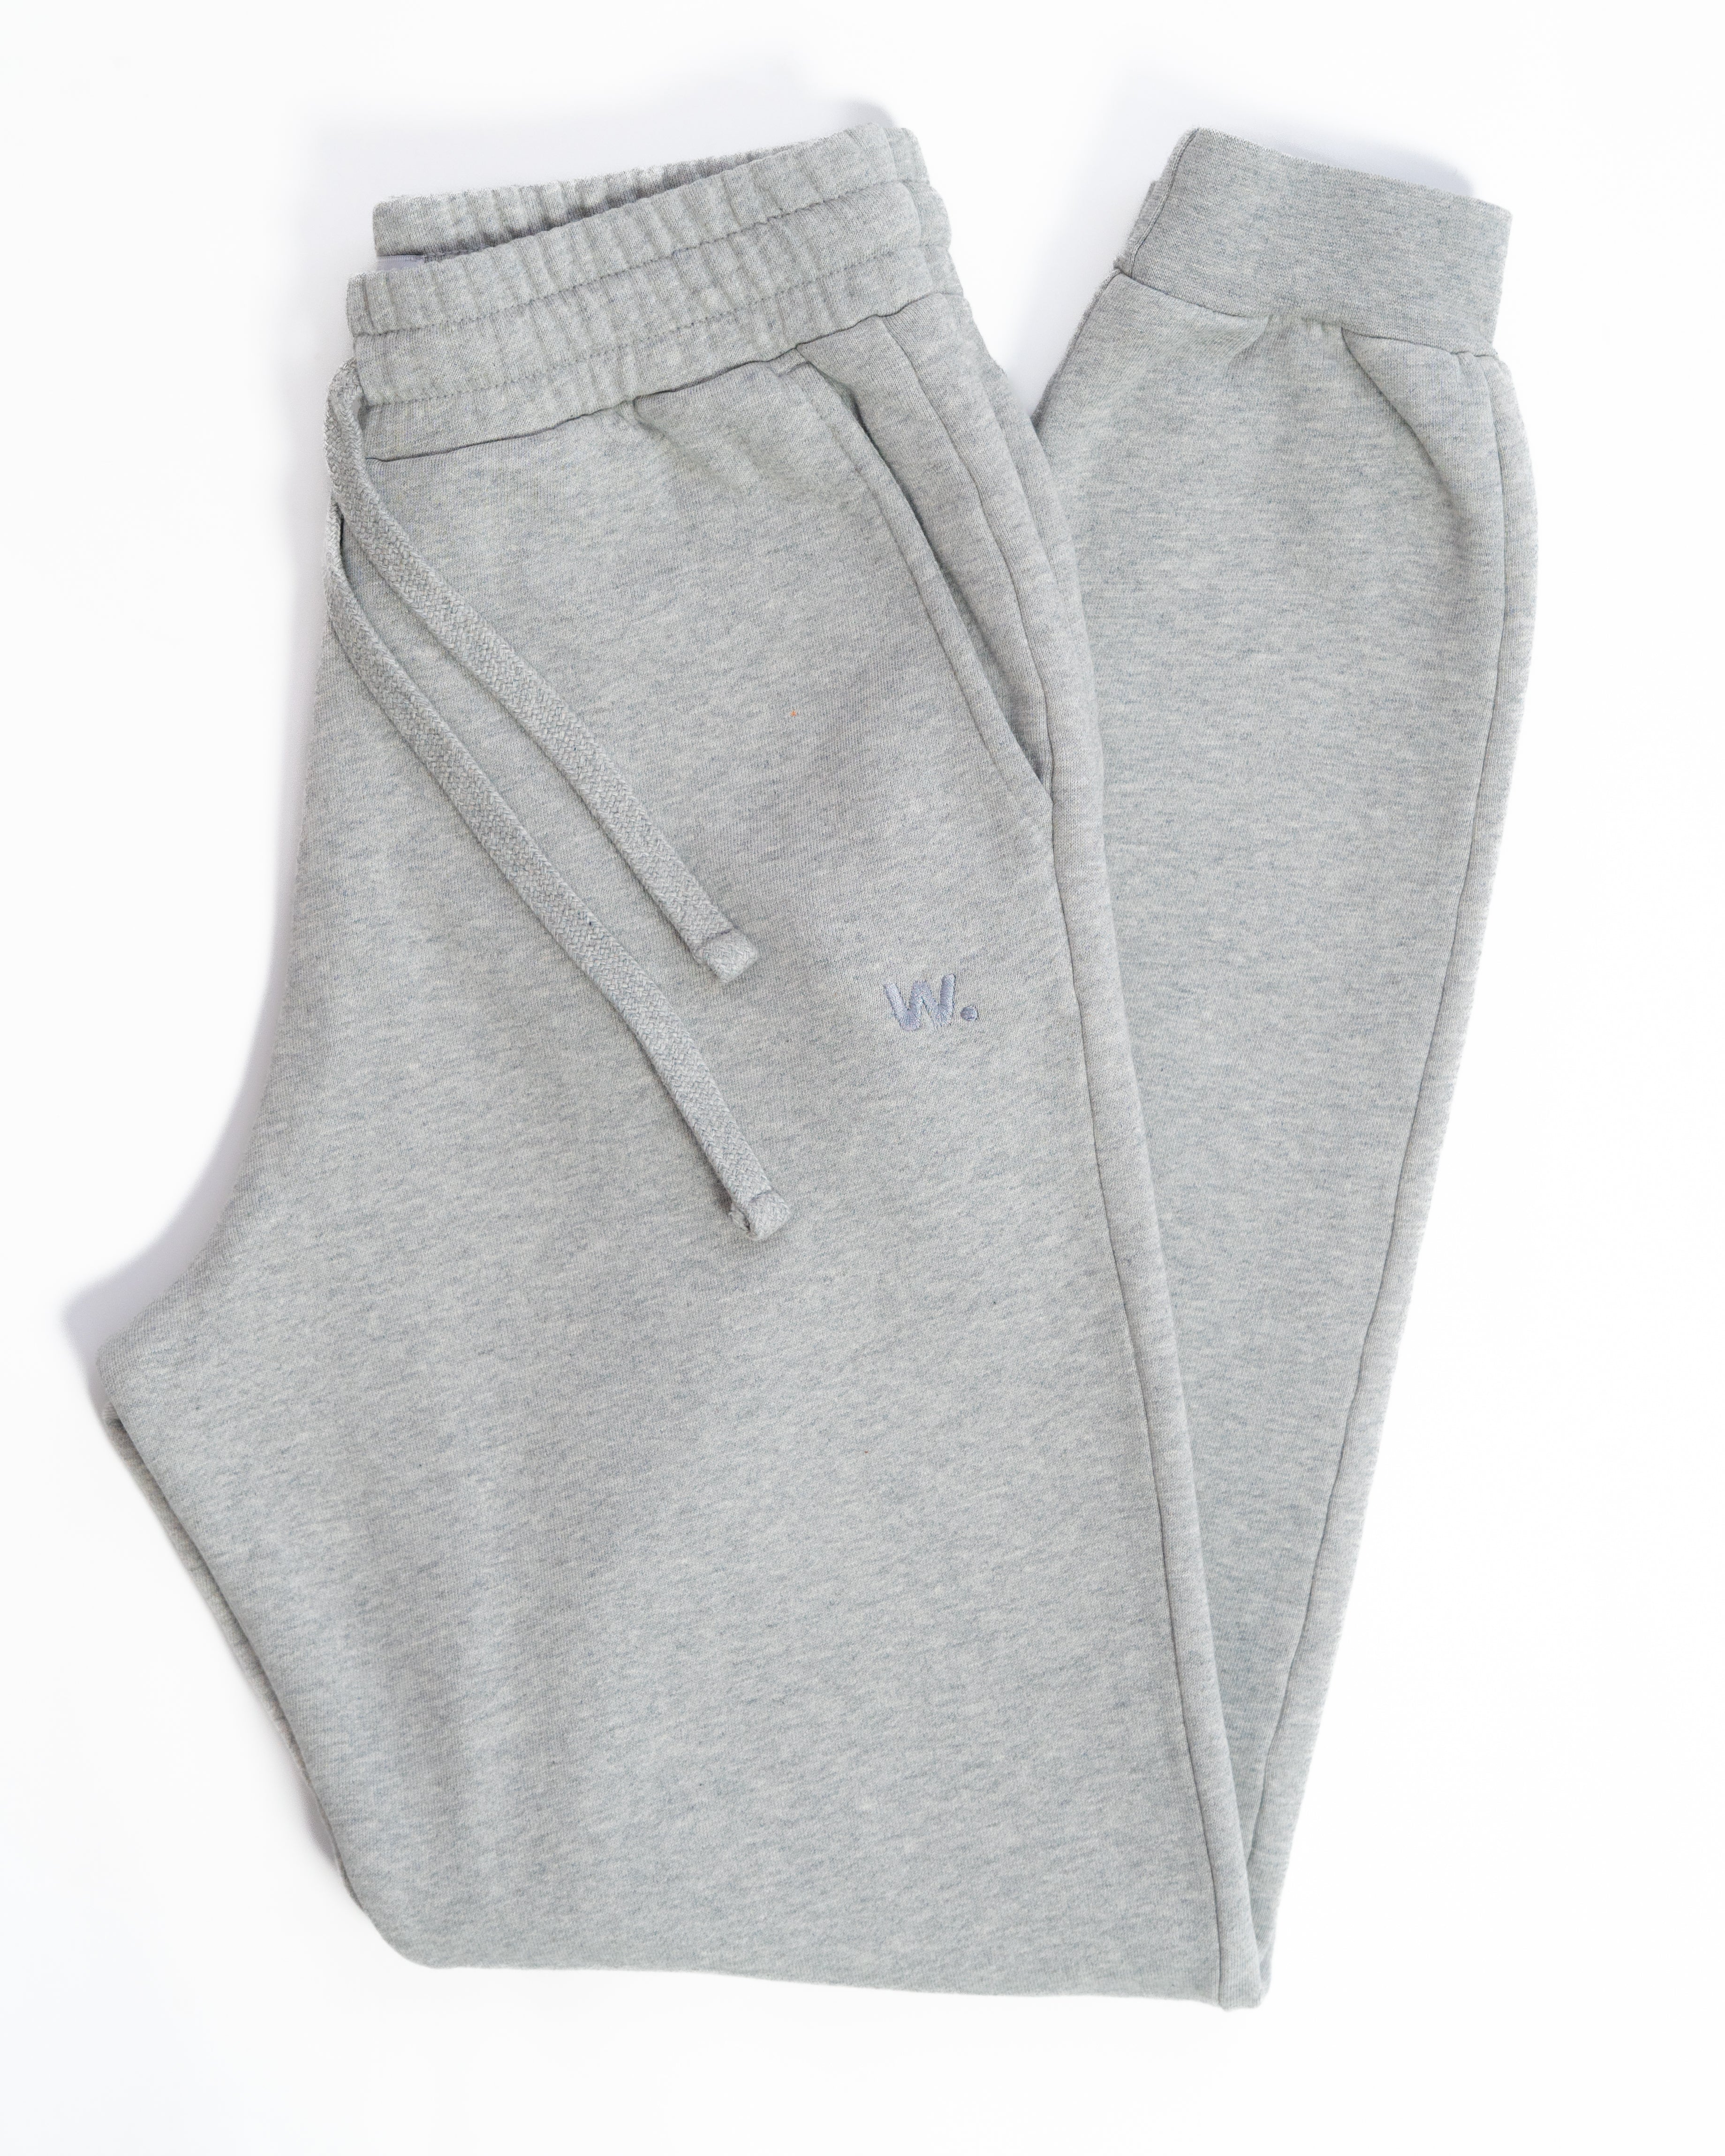 Premium - Sweatpants - Lunar Grey - Brushed